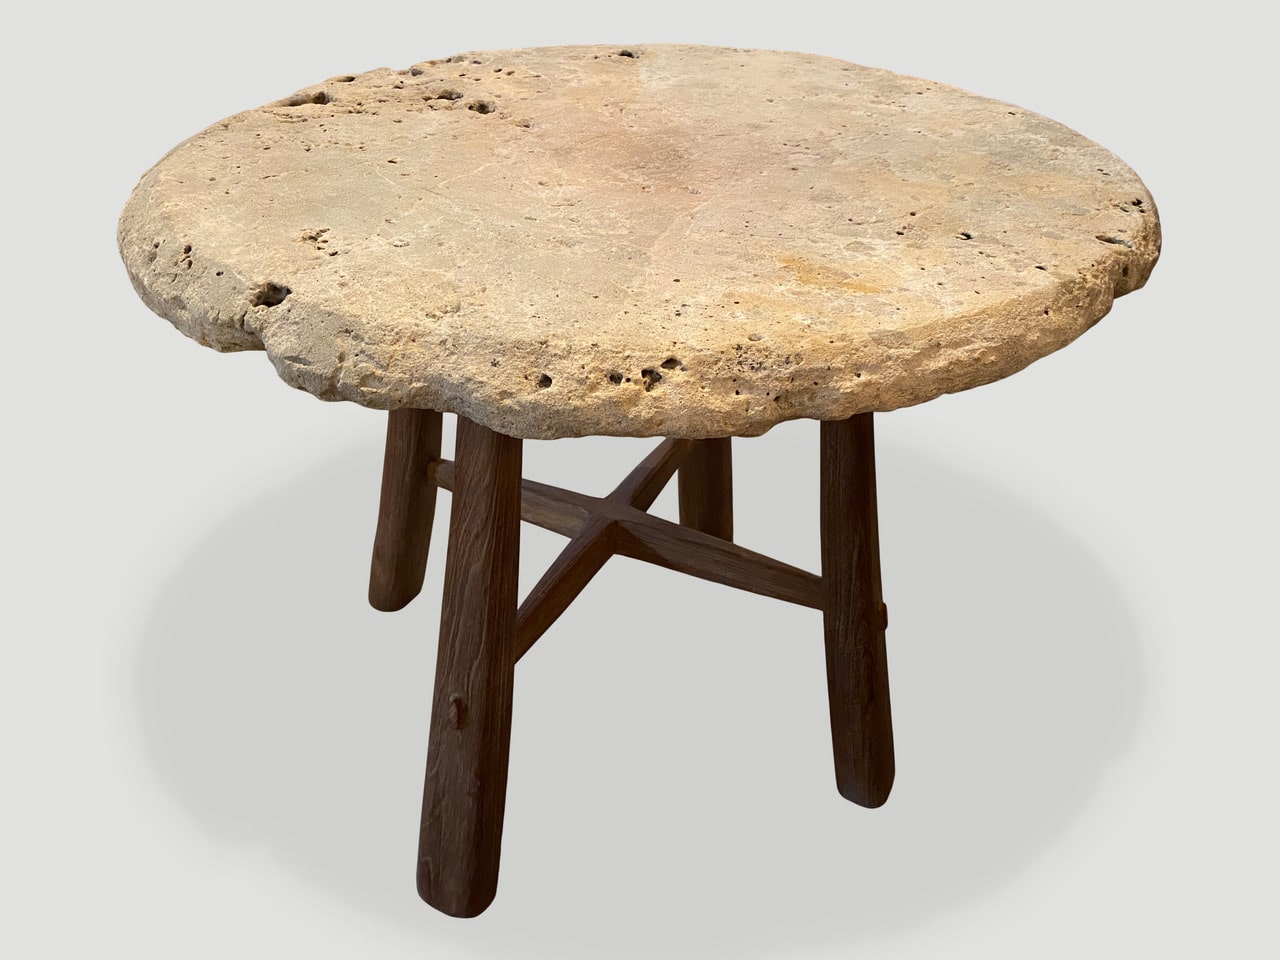 CENTURY OLD SUMBA STONE TABLE